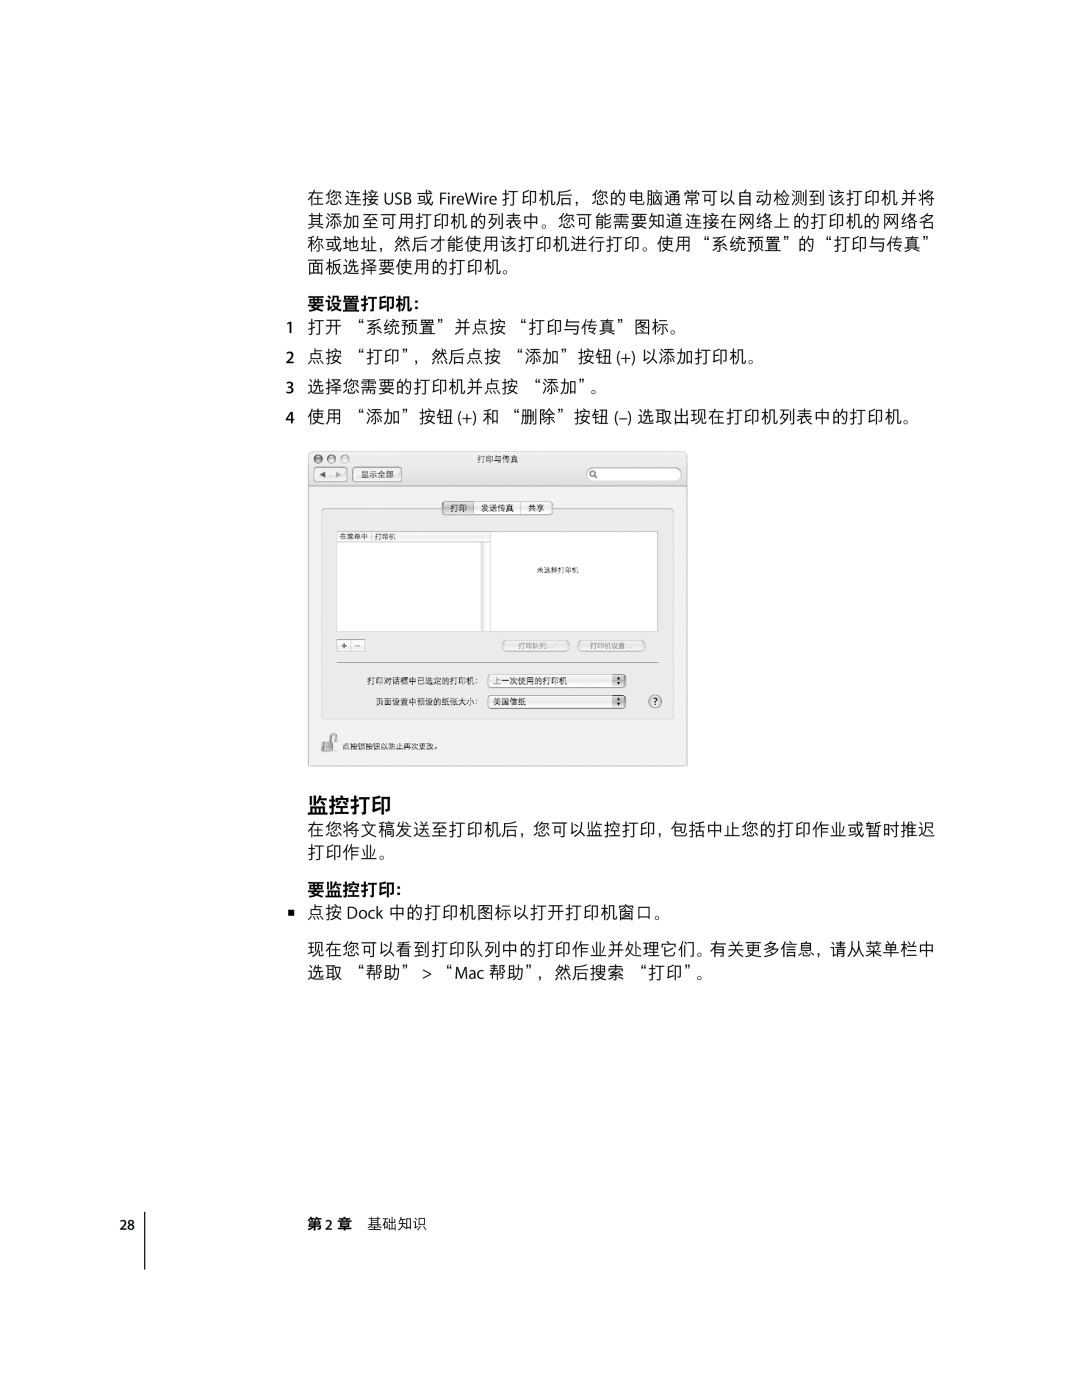 Apple G4 12 manual 4˜z¿ë, 4ì¿ë, 2 ½,ž 